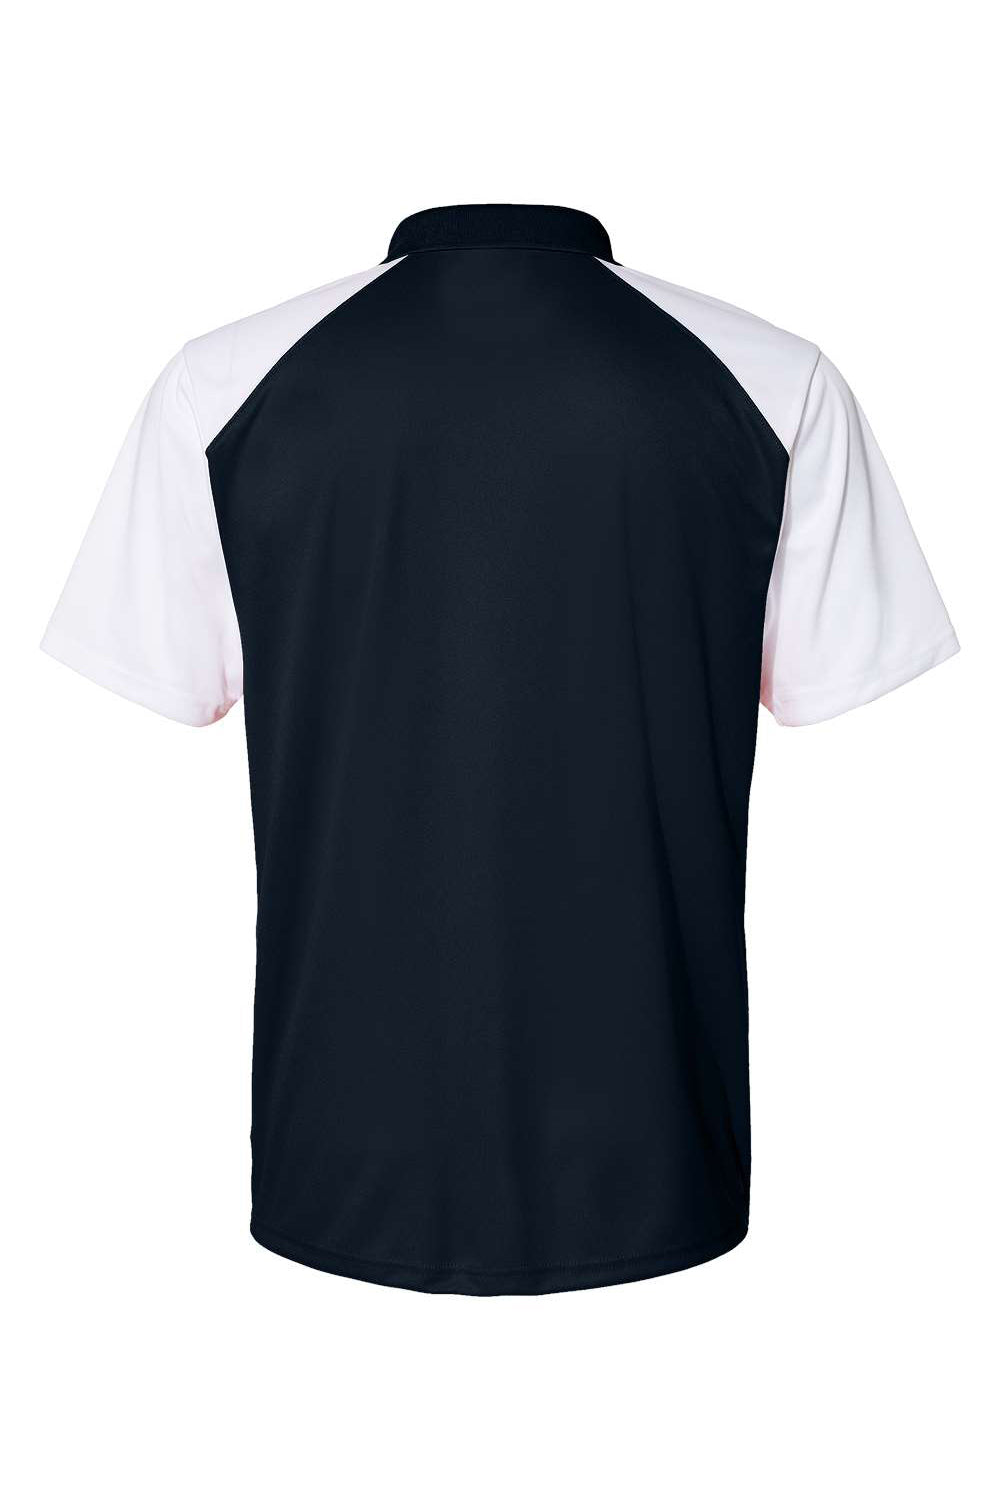 C2 Sport 5903 Mens Moisture Wicking Short Sleeve Polo Shirt Navy Blue/White Flat Back